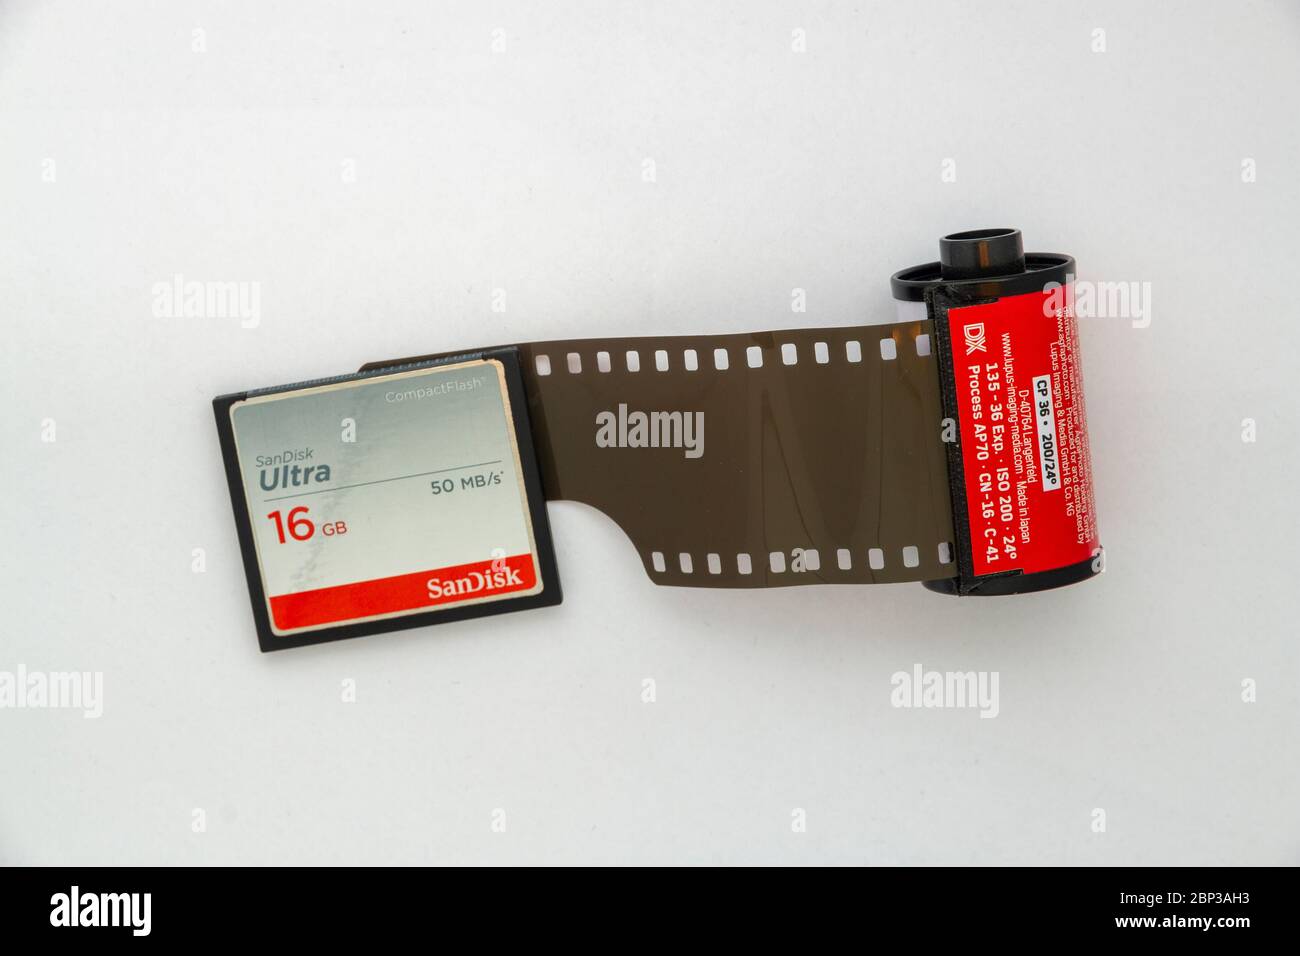 Vue en hauteur d'une carte SD de 16 Go à côté d'une cassette de film 35 mm légèrement non enroulée Banque D'Images